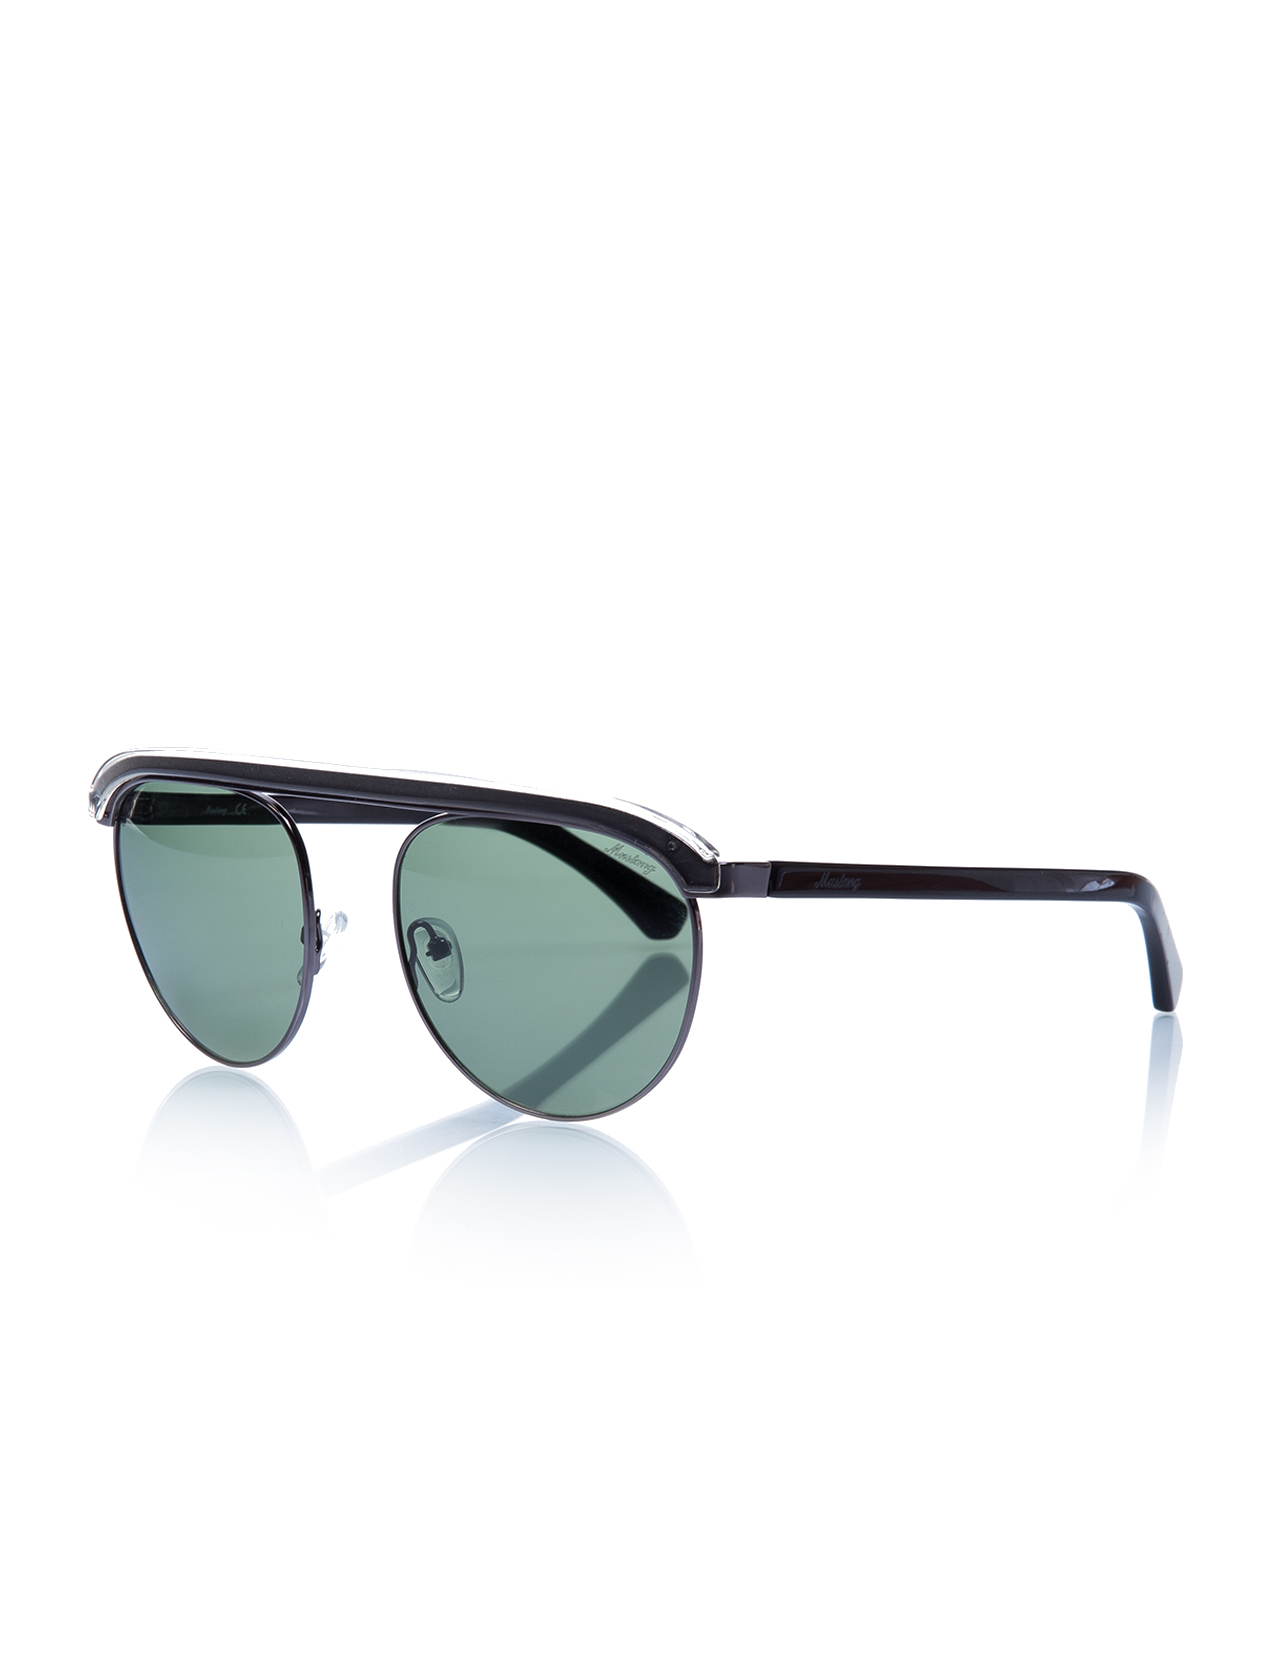 Unisex New Design Sunglasses